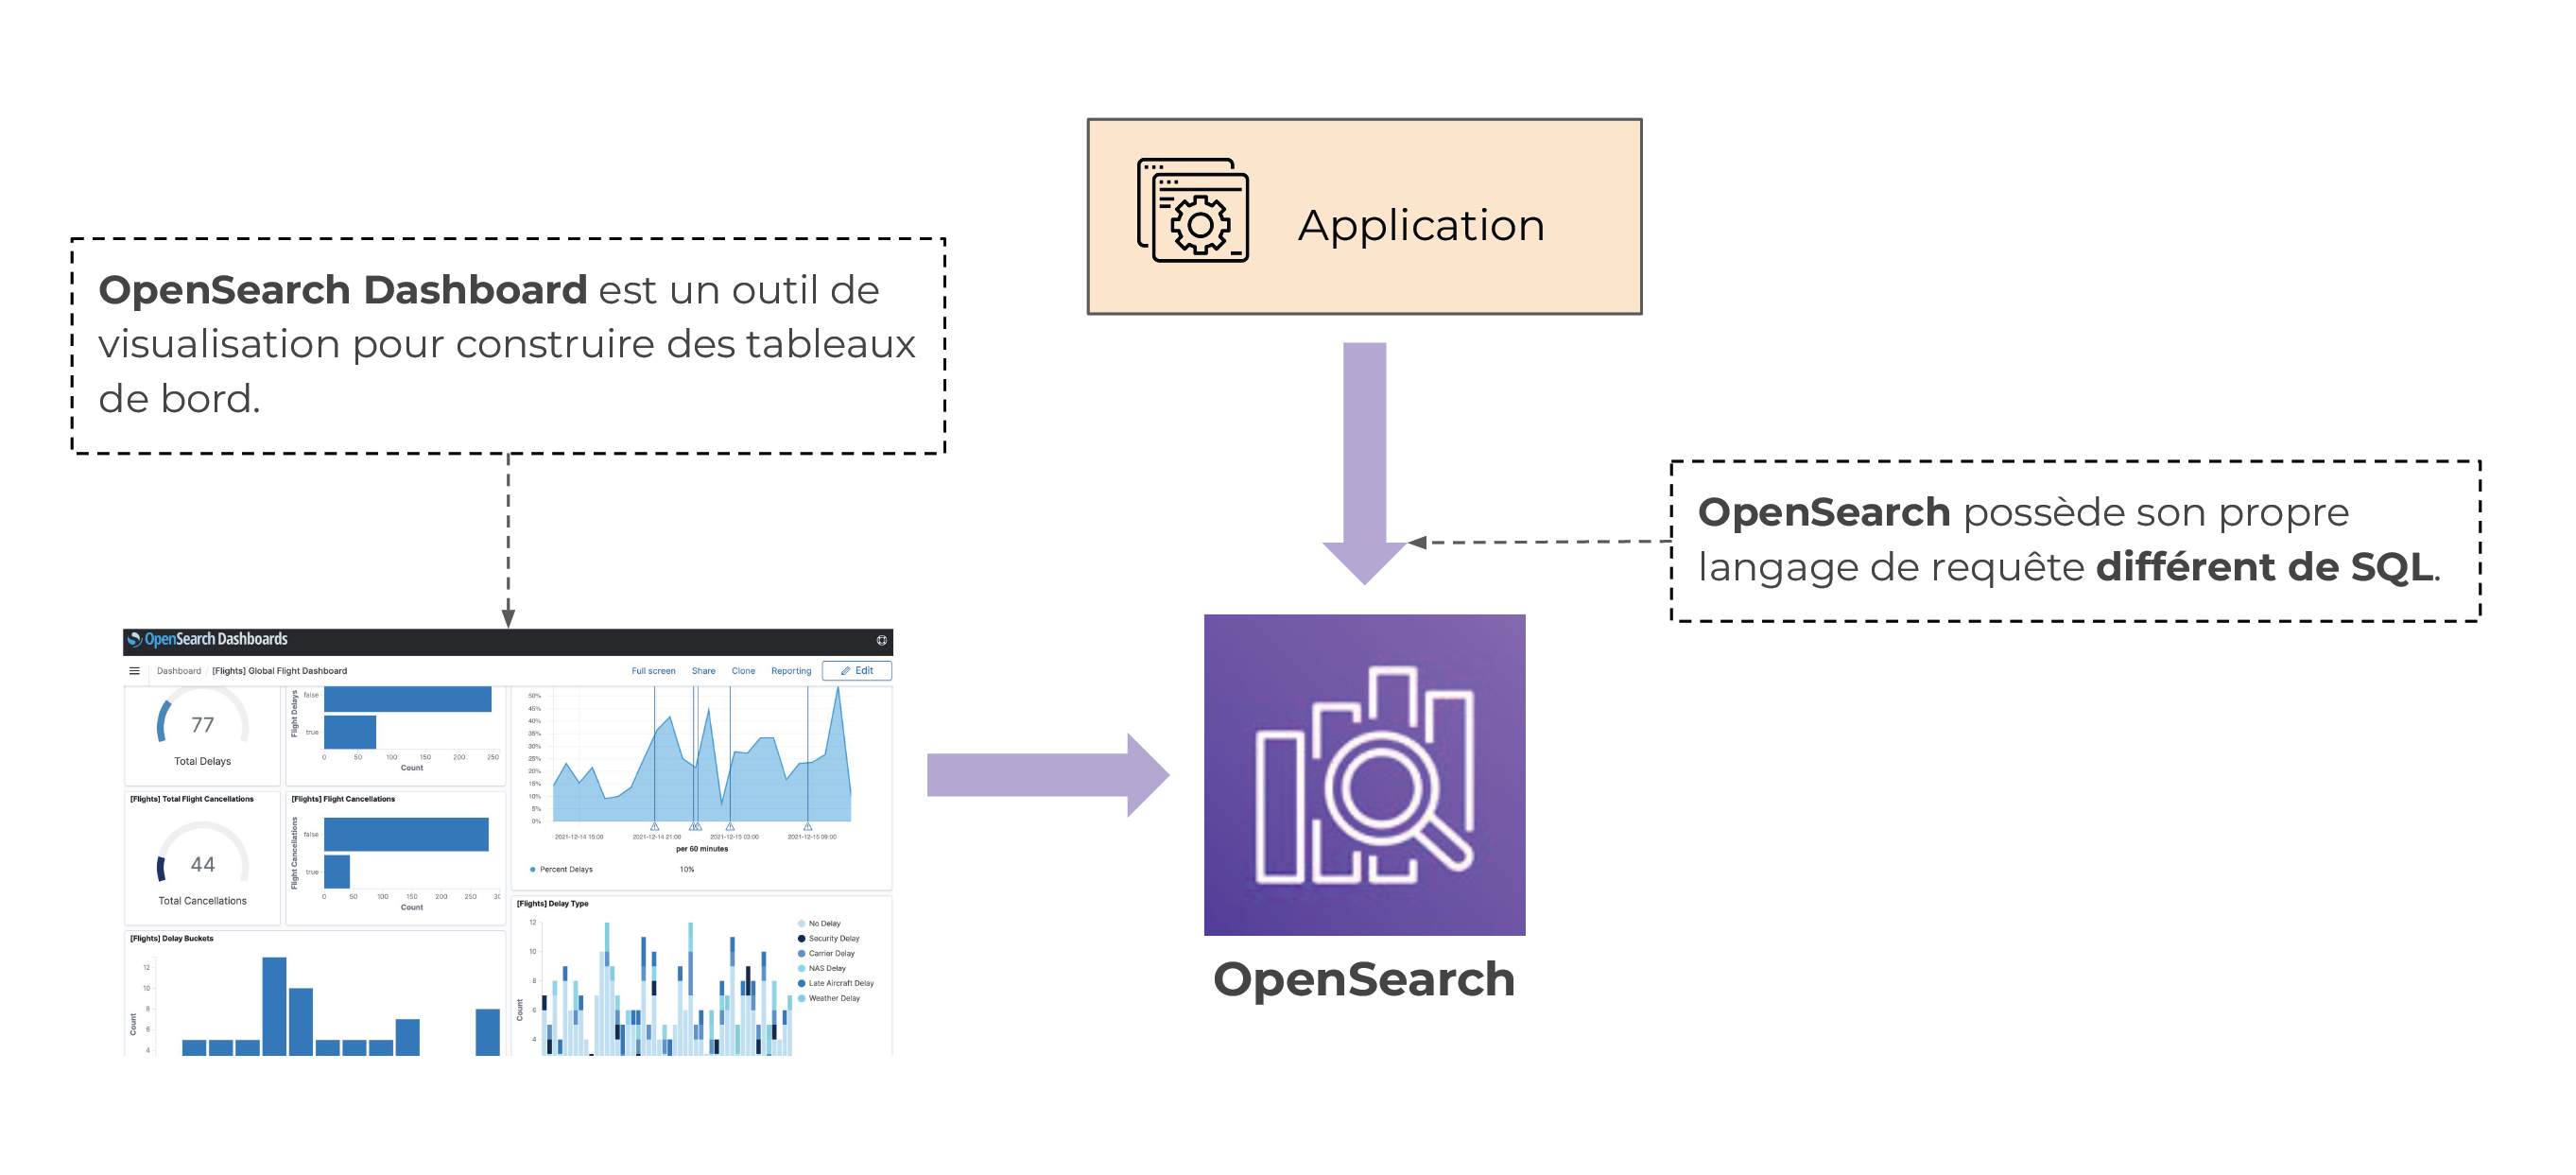 Une flèche relie l’application avec OpenSearch (OpenSearch possède son propre langage de requête différent de SQL). Une autre relie OpenSearch dashboard (un outil de visualisation pour construire des tableaux de bord) avec OpenSearch.